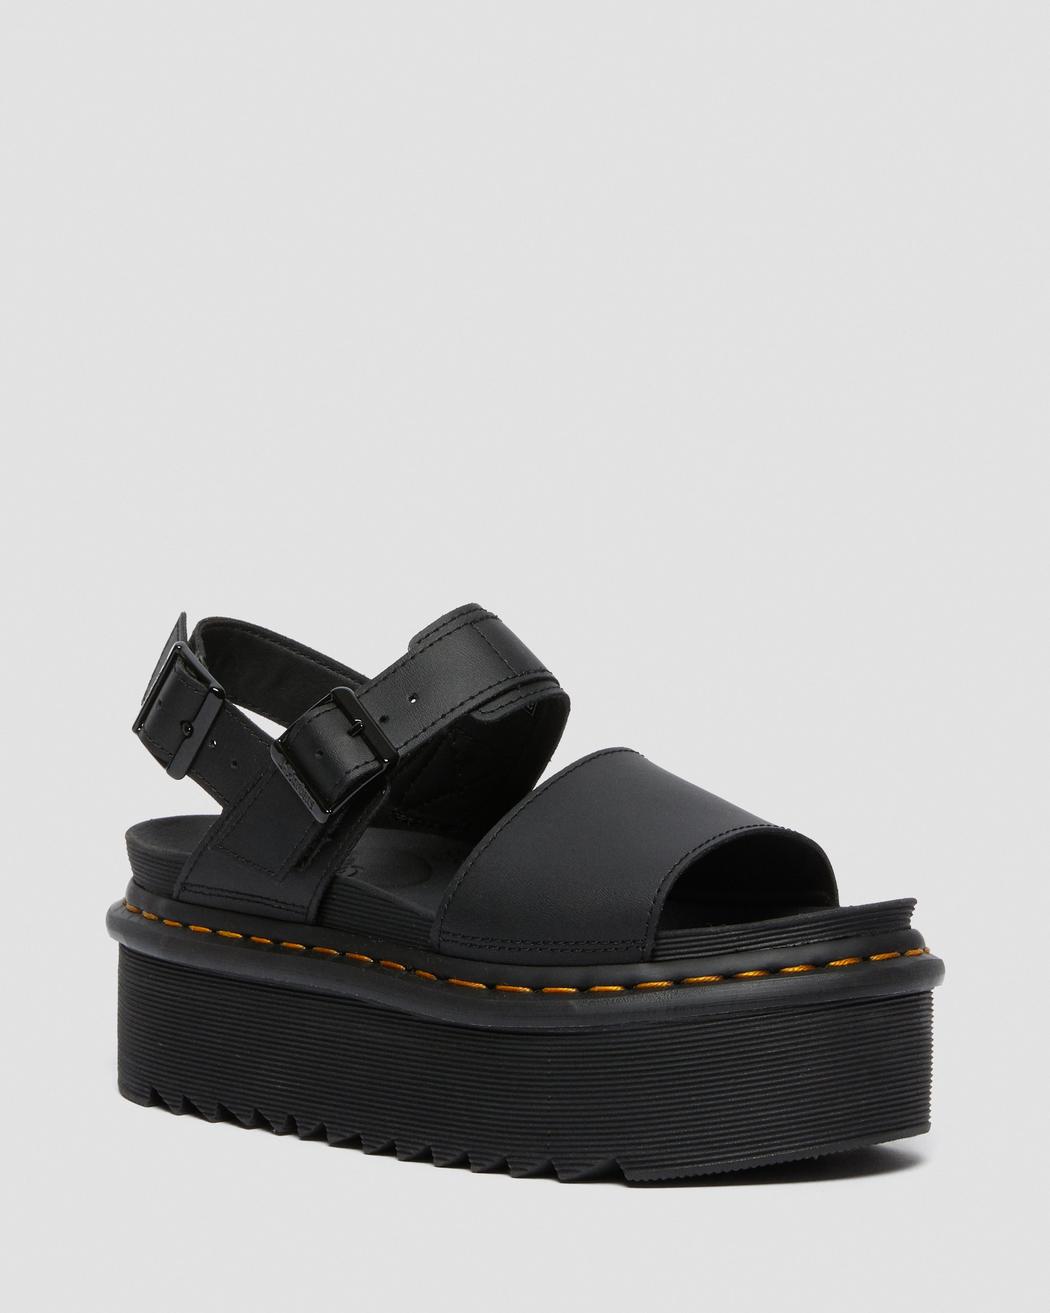 Dr. Martens Voss Quad Black Hydro Leather Sandals 26725001